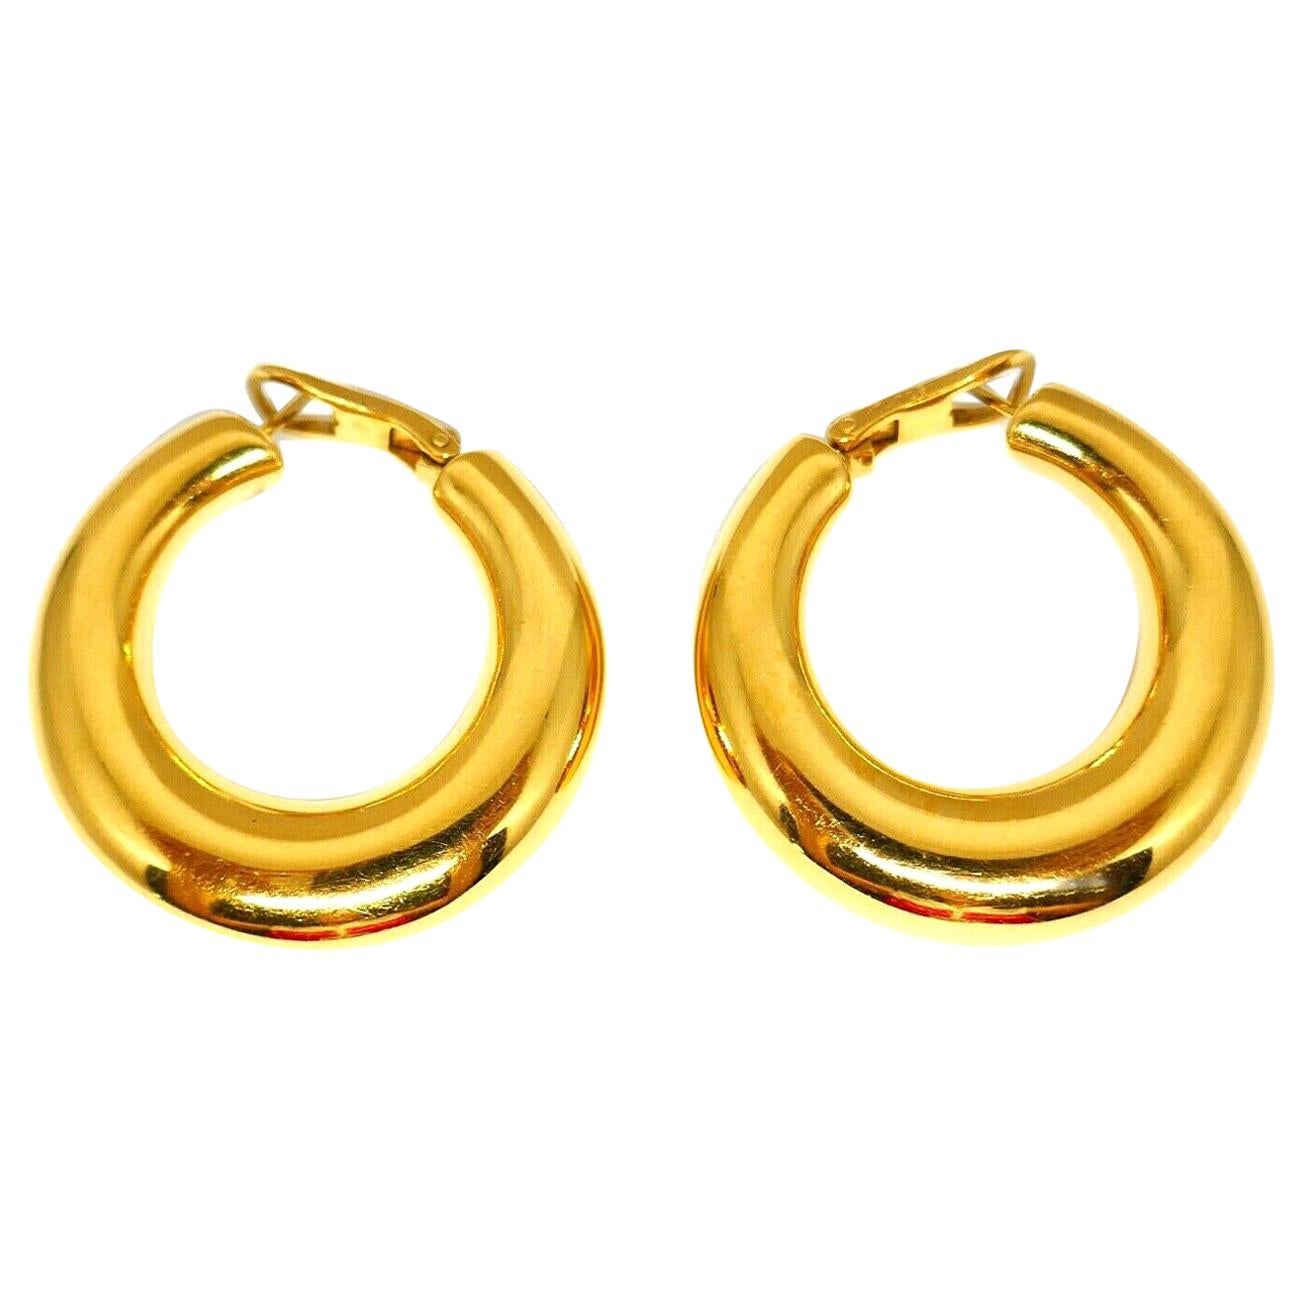 Chaumet Vintage Yellow Gold Hoops Earrings